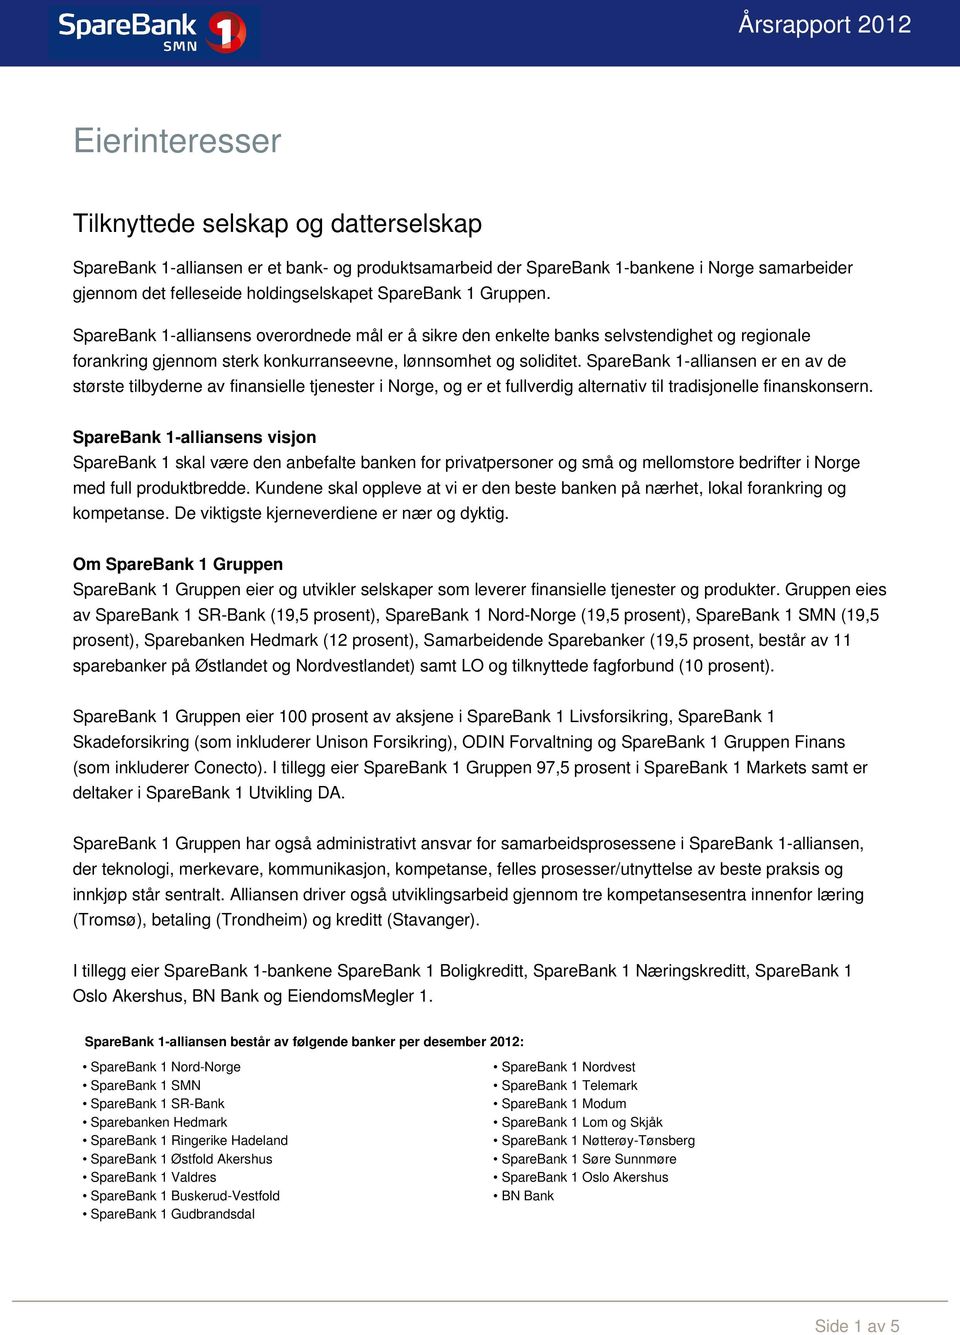 SpareBank 1-alliansen er en av de største tilbyderne av finansielle tjenester i Norge, og er et fullverdig alternativ til tradisjonelle finanskonsern.